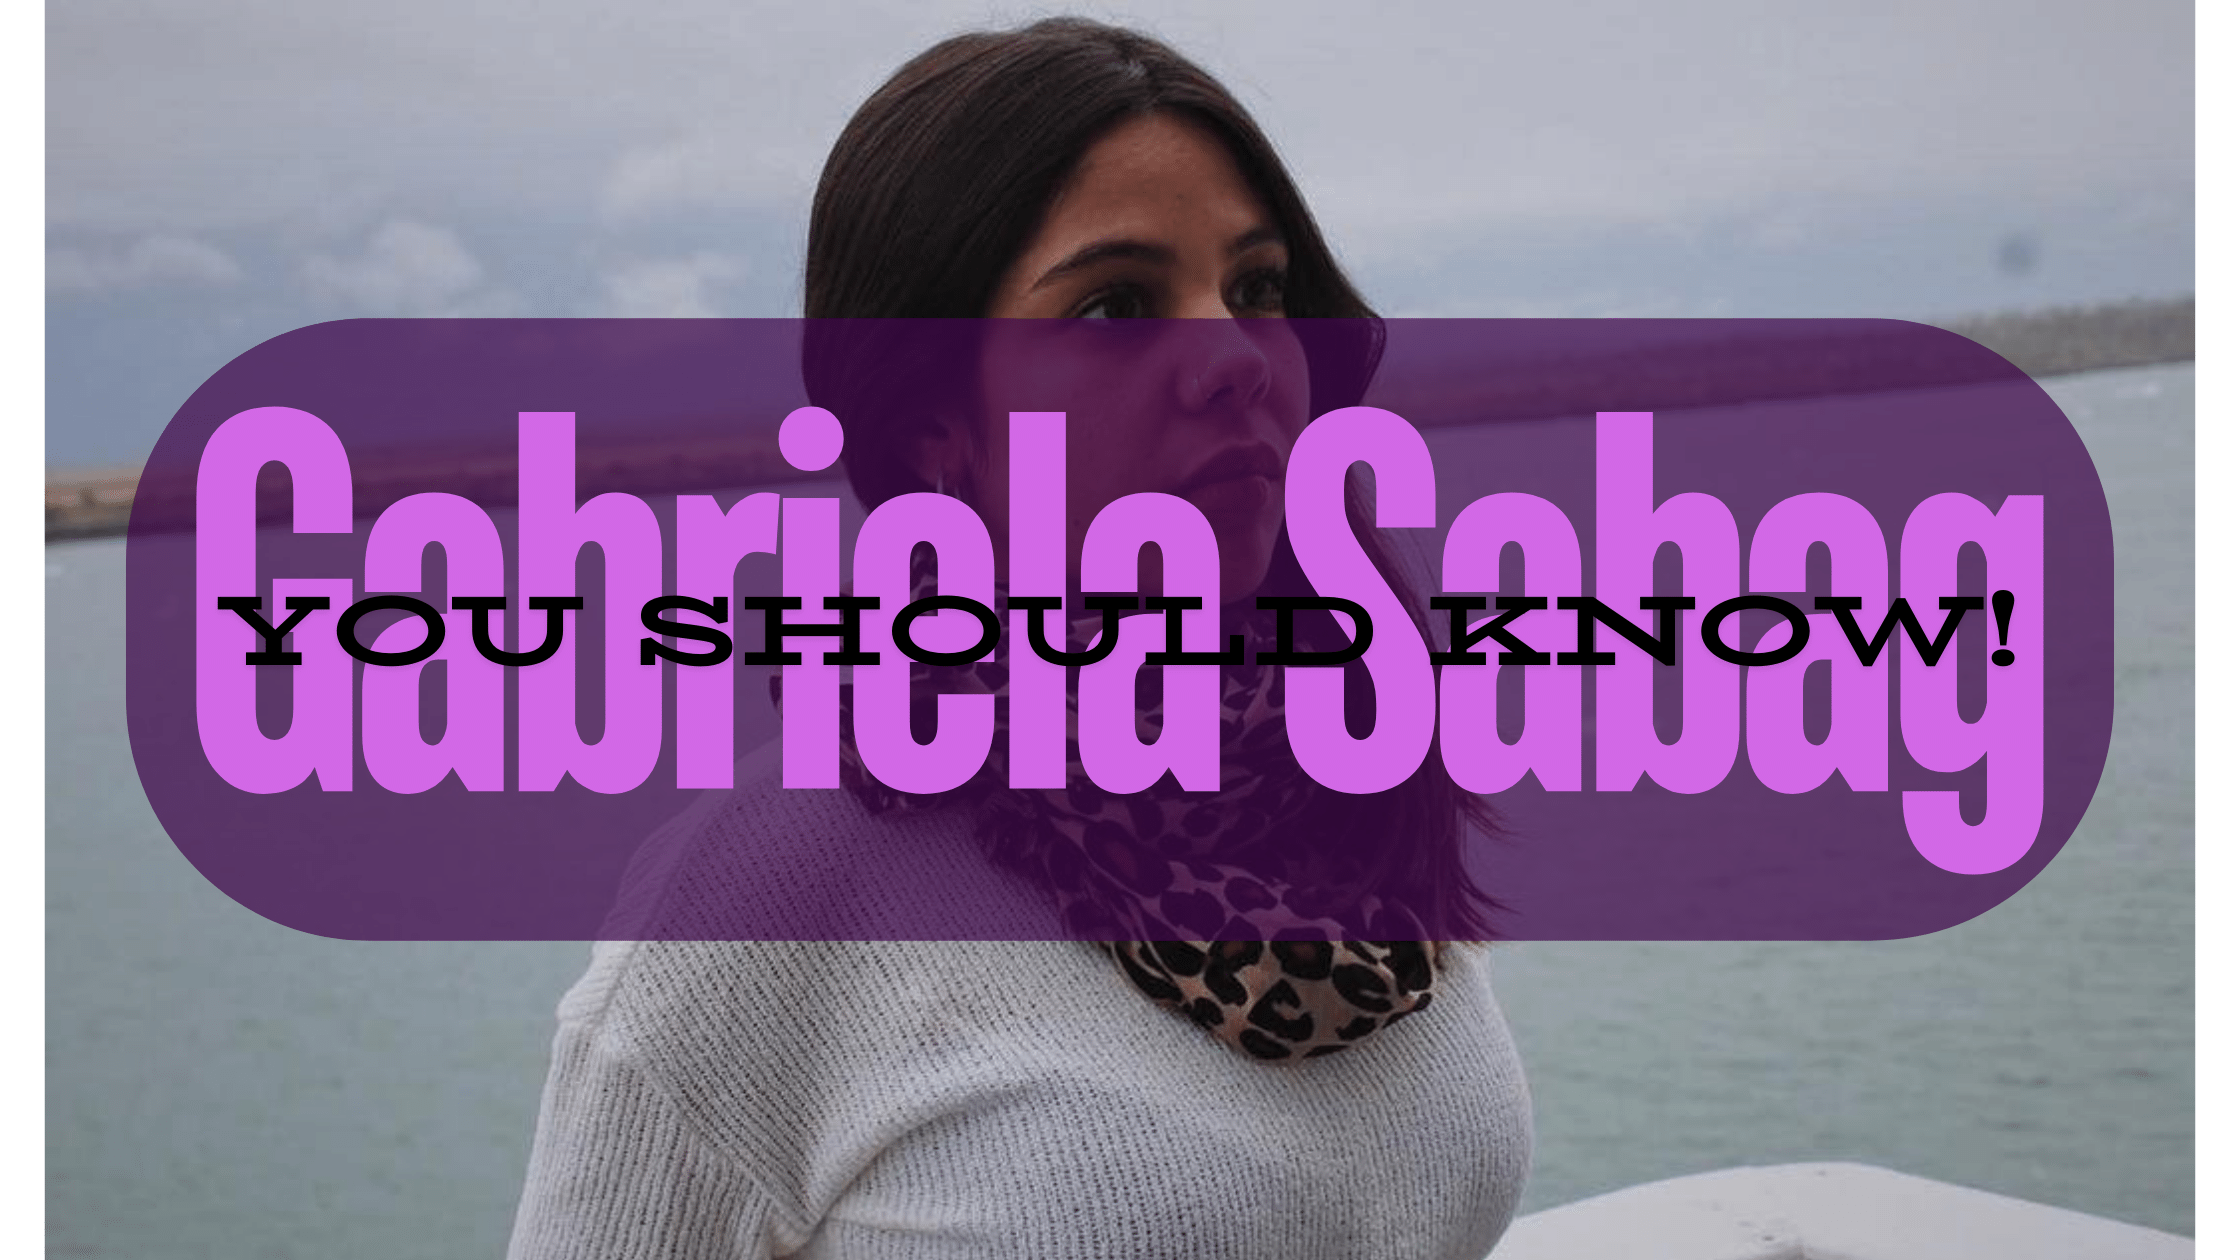 Gabriela Sabag – You Should Know!